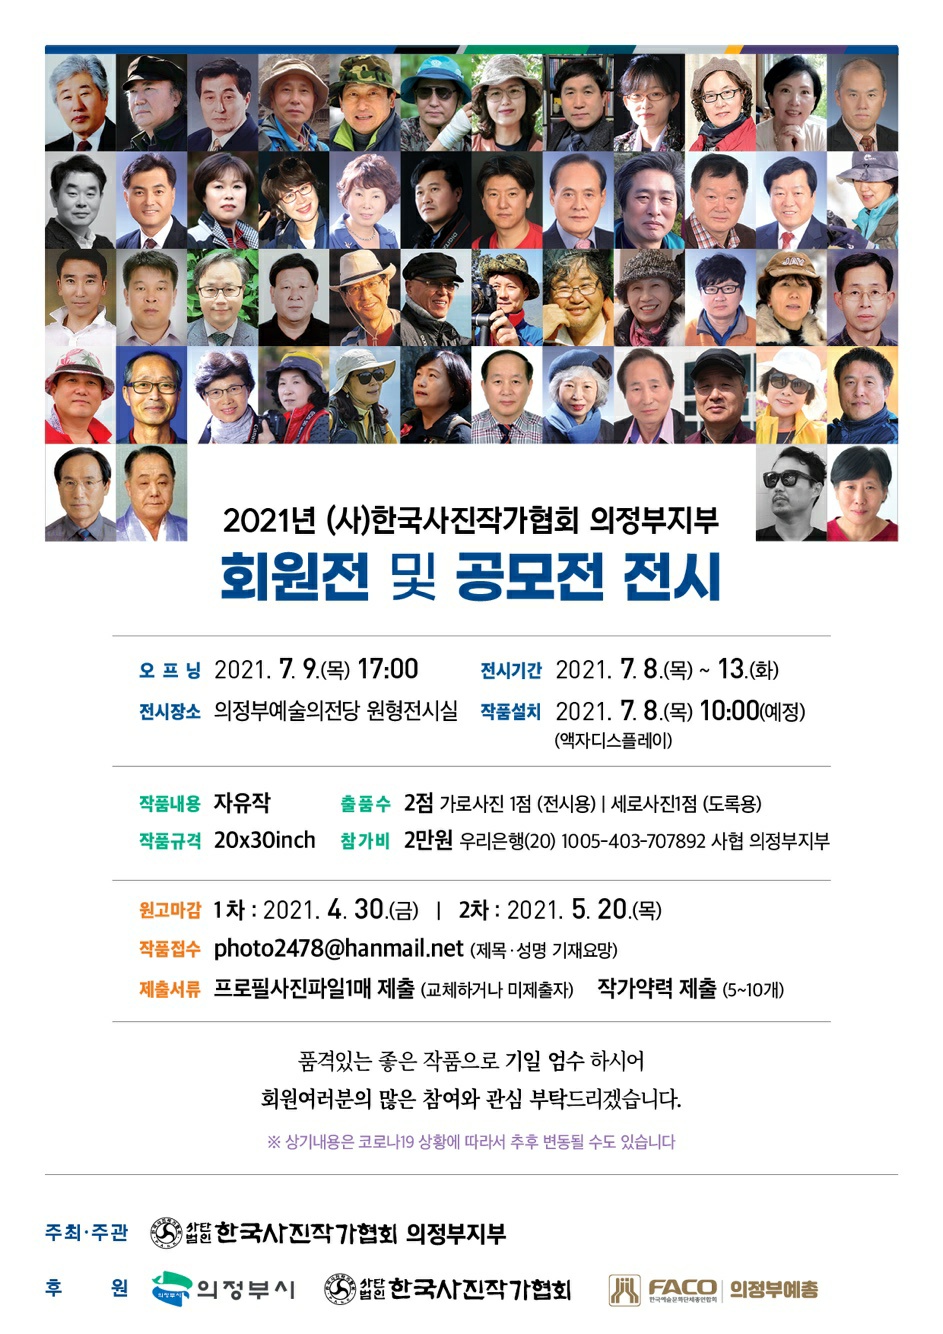 2021년 (사)한국사진작가협회 의정부지부 회원전 및 공모전 전시